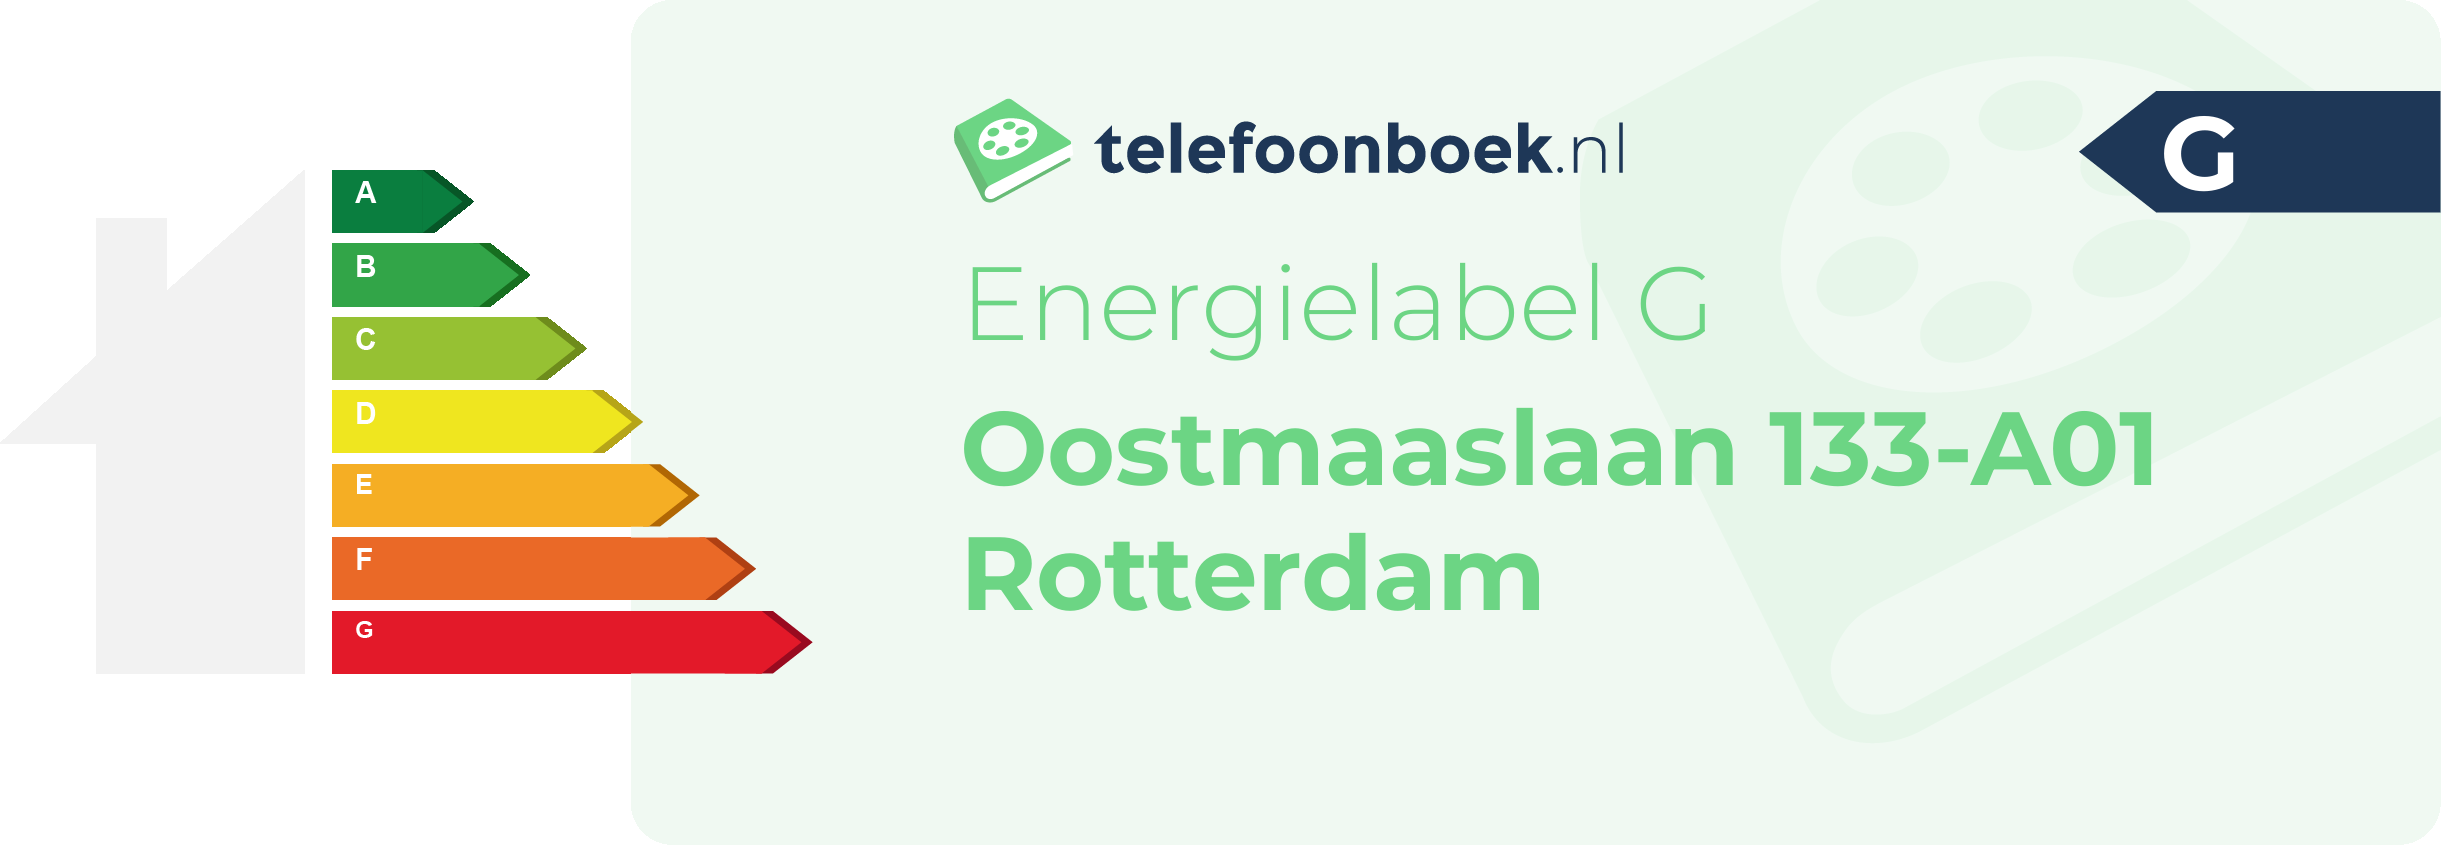 Energielabel Oostmaaslaan 133-A01 Rotterdam